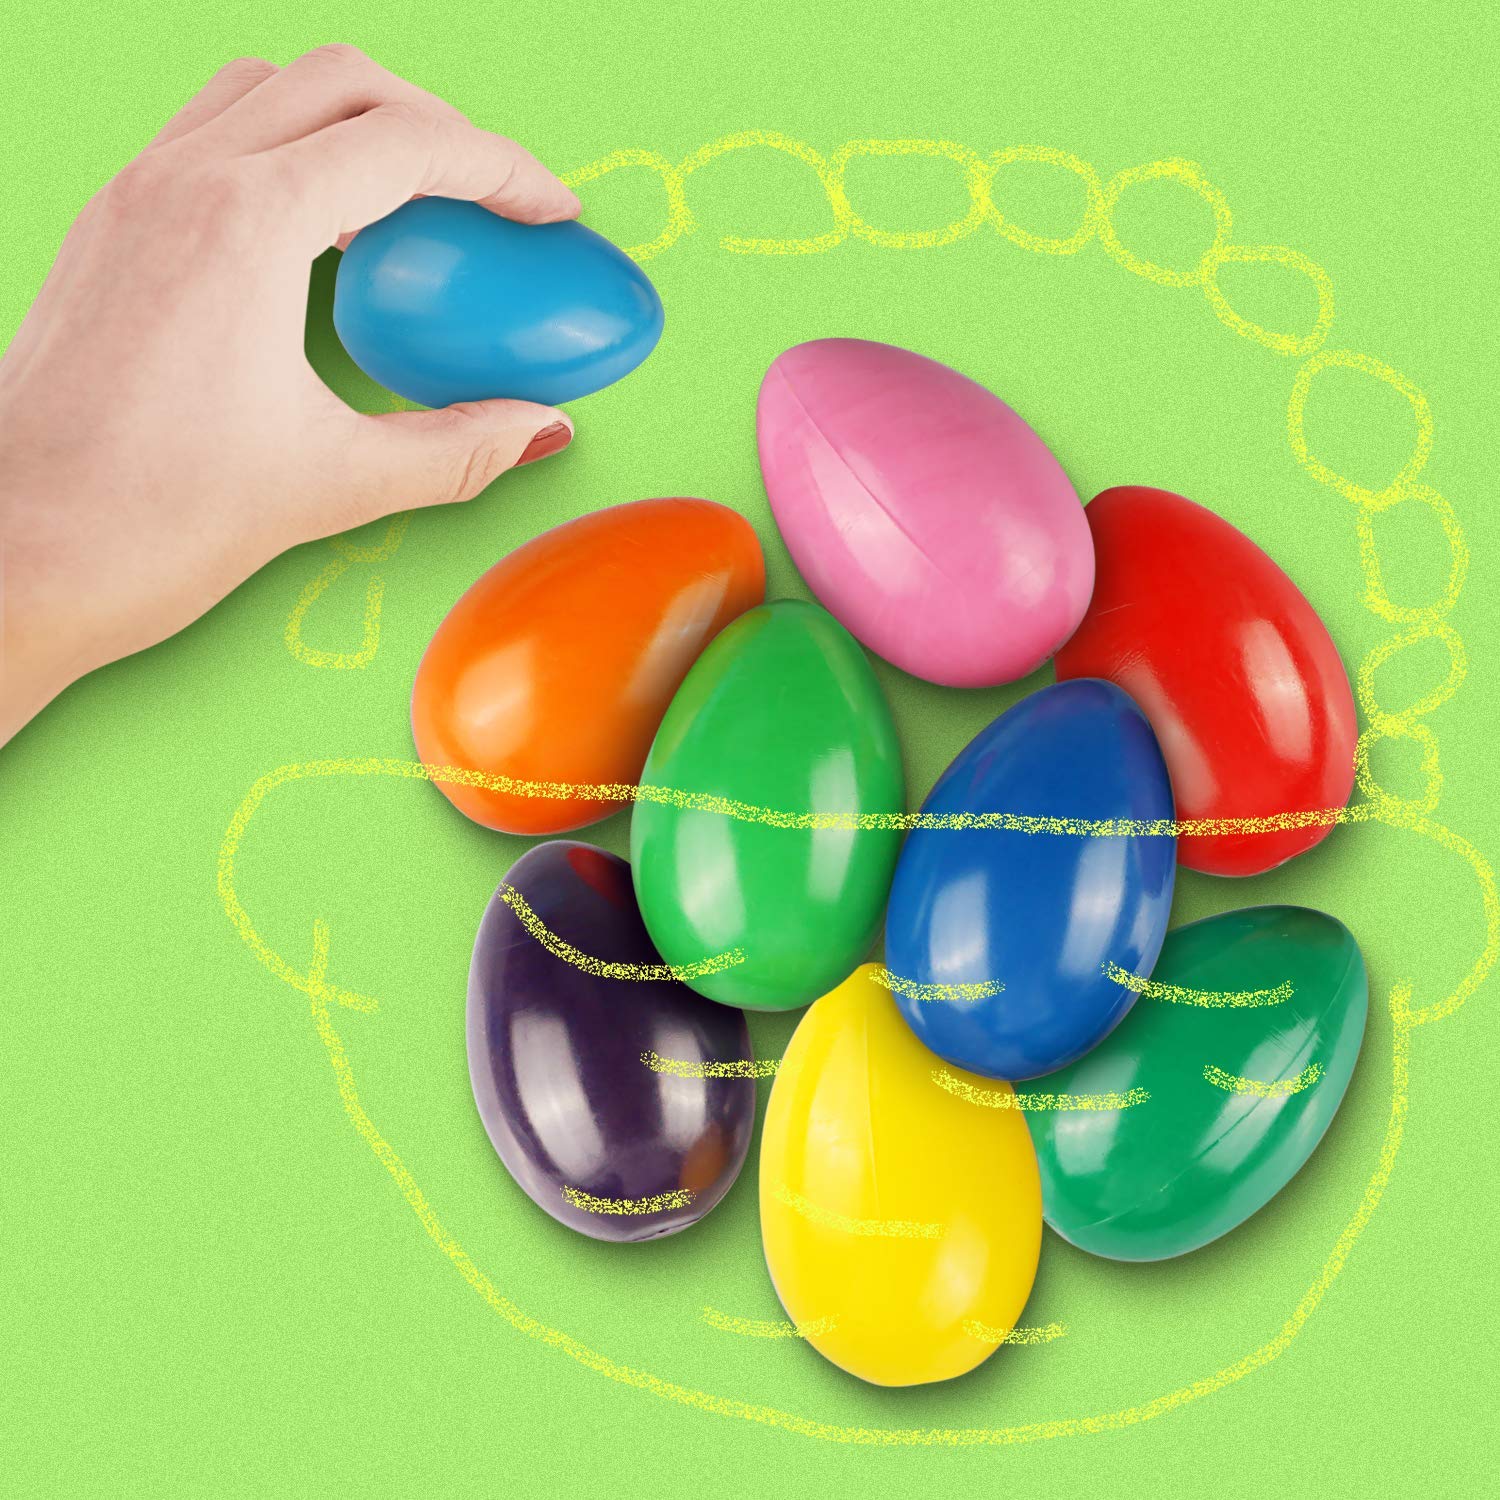 9個/セット9色卵形パームグリップクレヨン子供の幼児のための無毒ペイントクレヨンおもちゃを設定します。